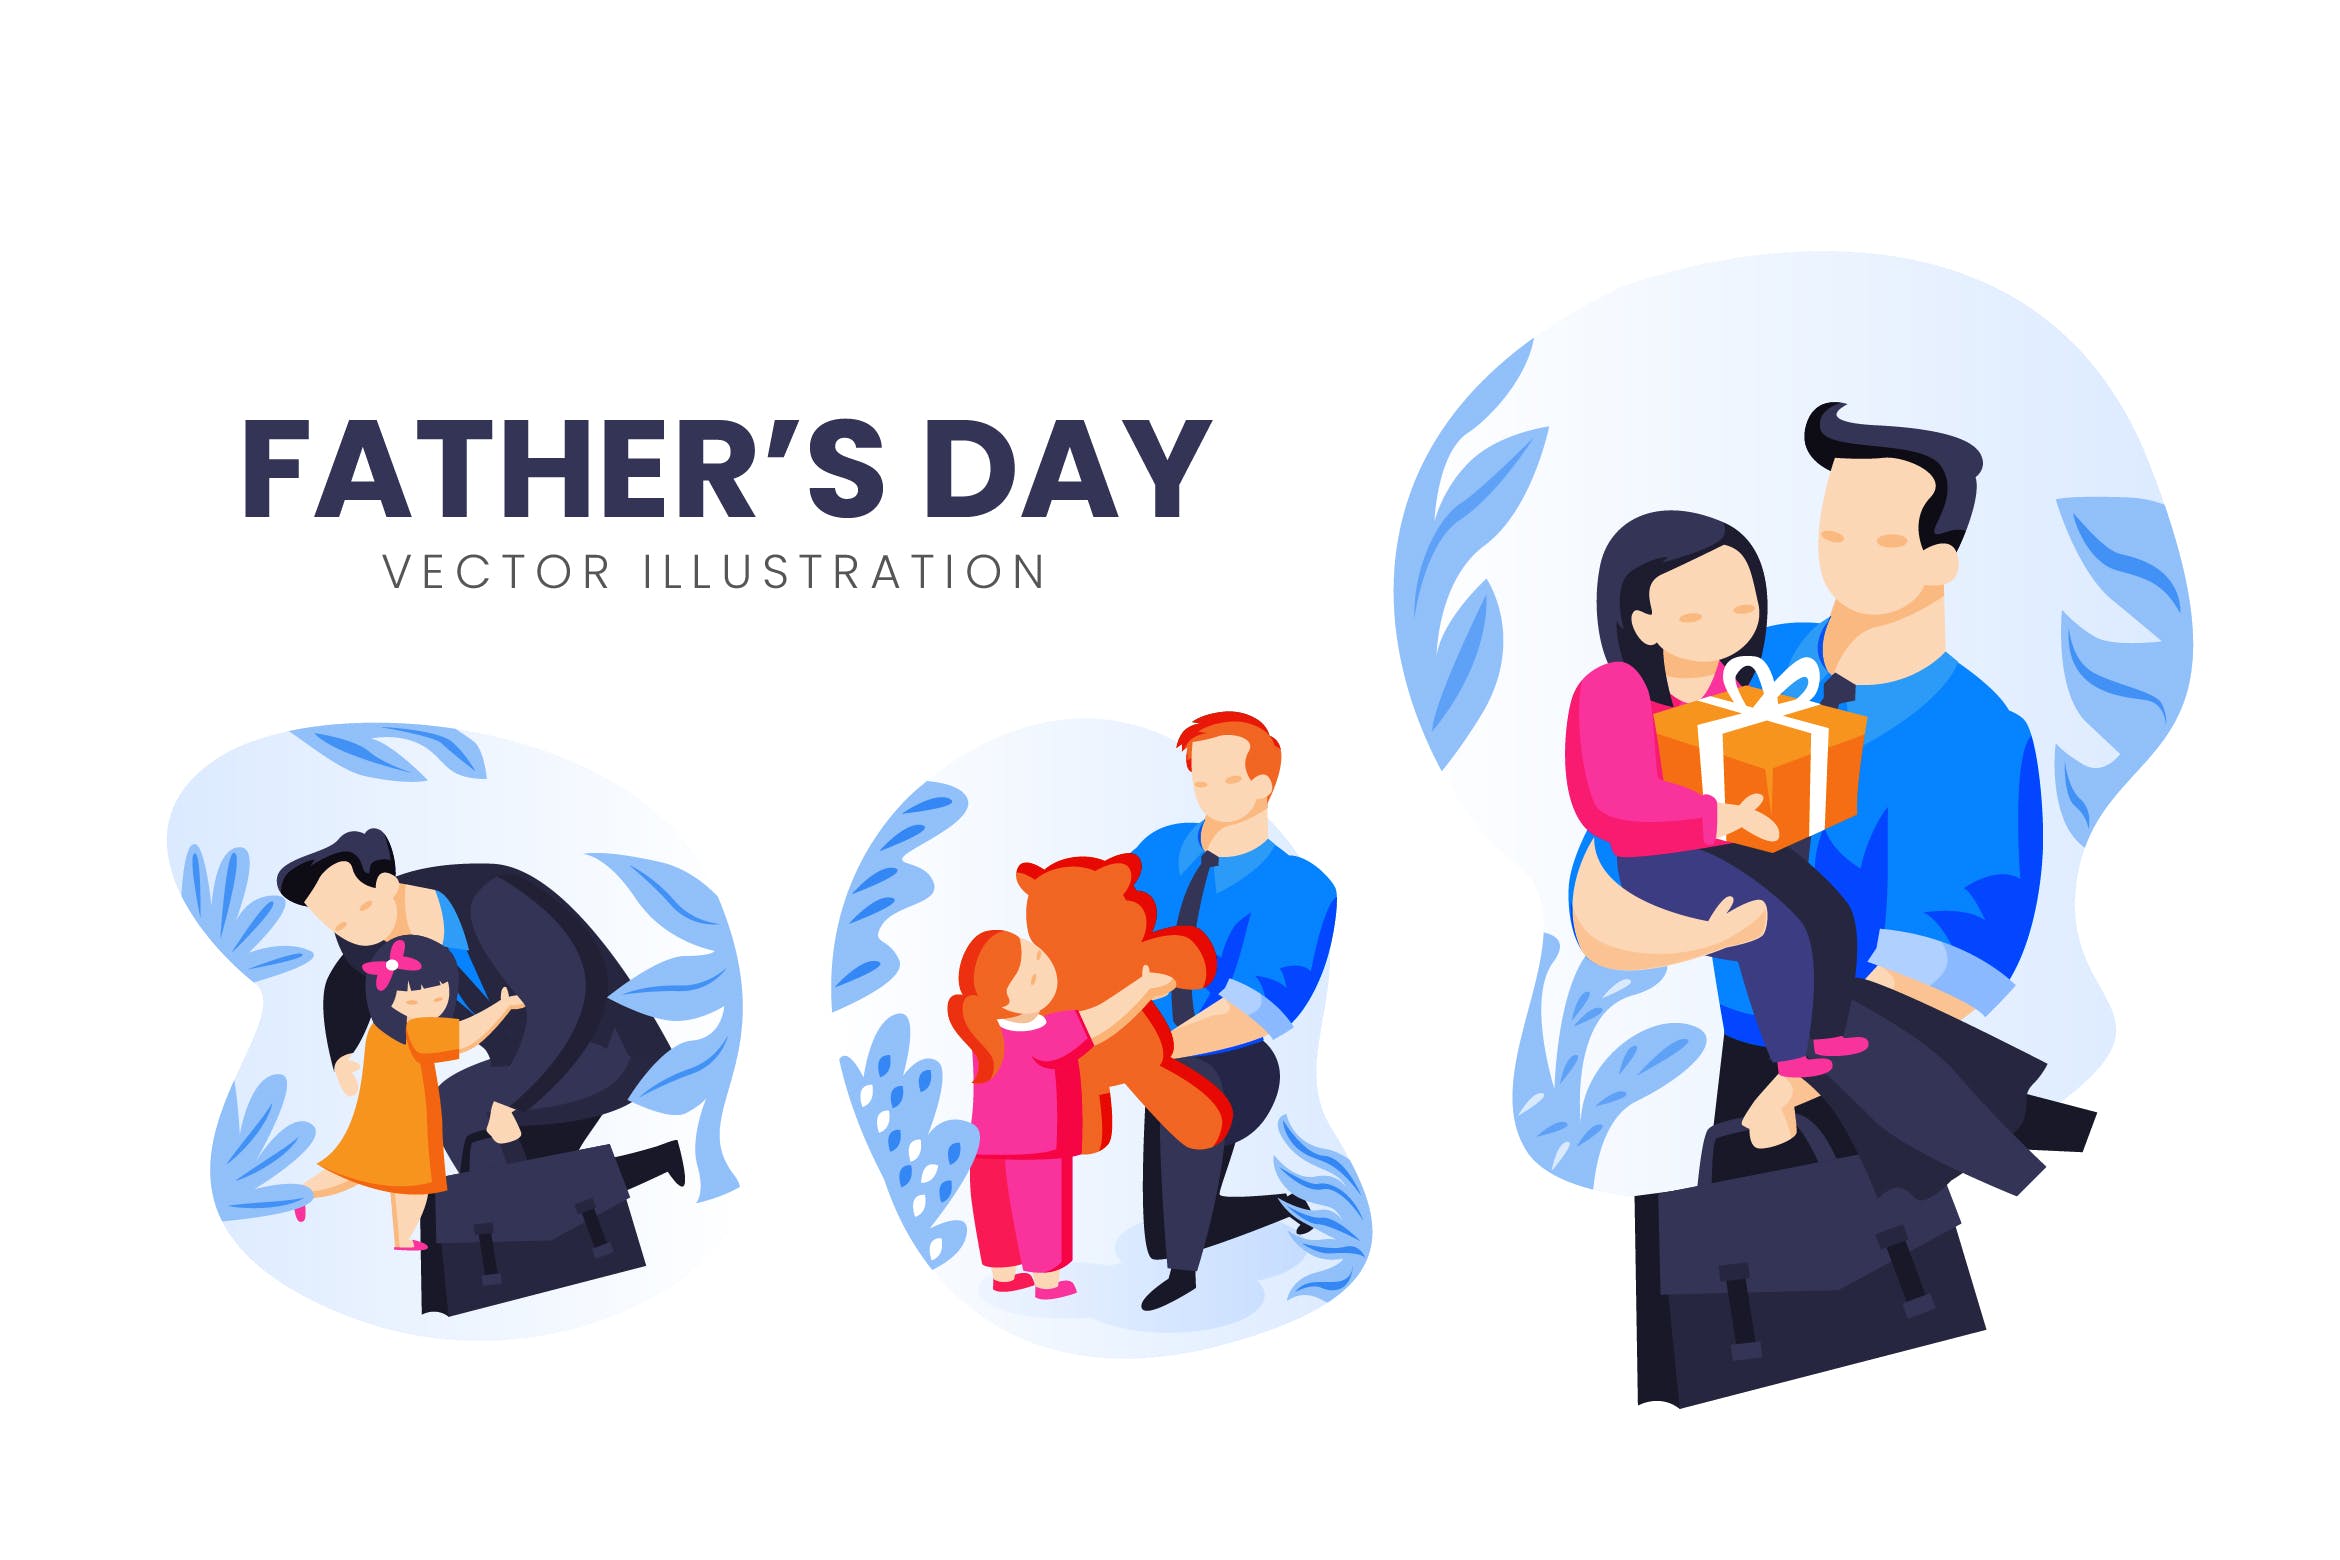 父亲节主题人物形象16设计网精选手绘插画矢量素材 Fathers Day Vector Character Set插图